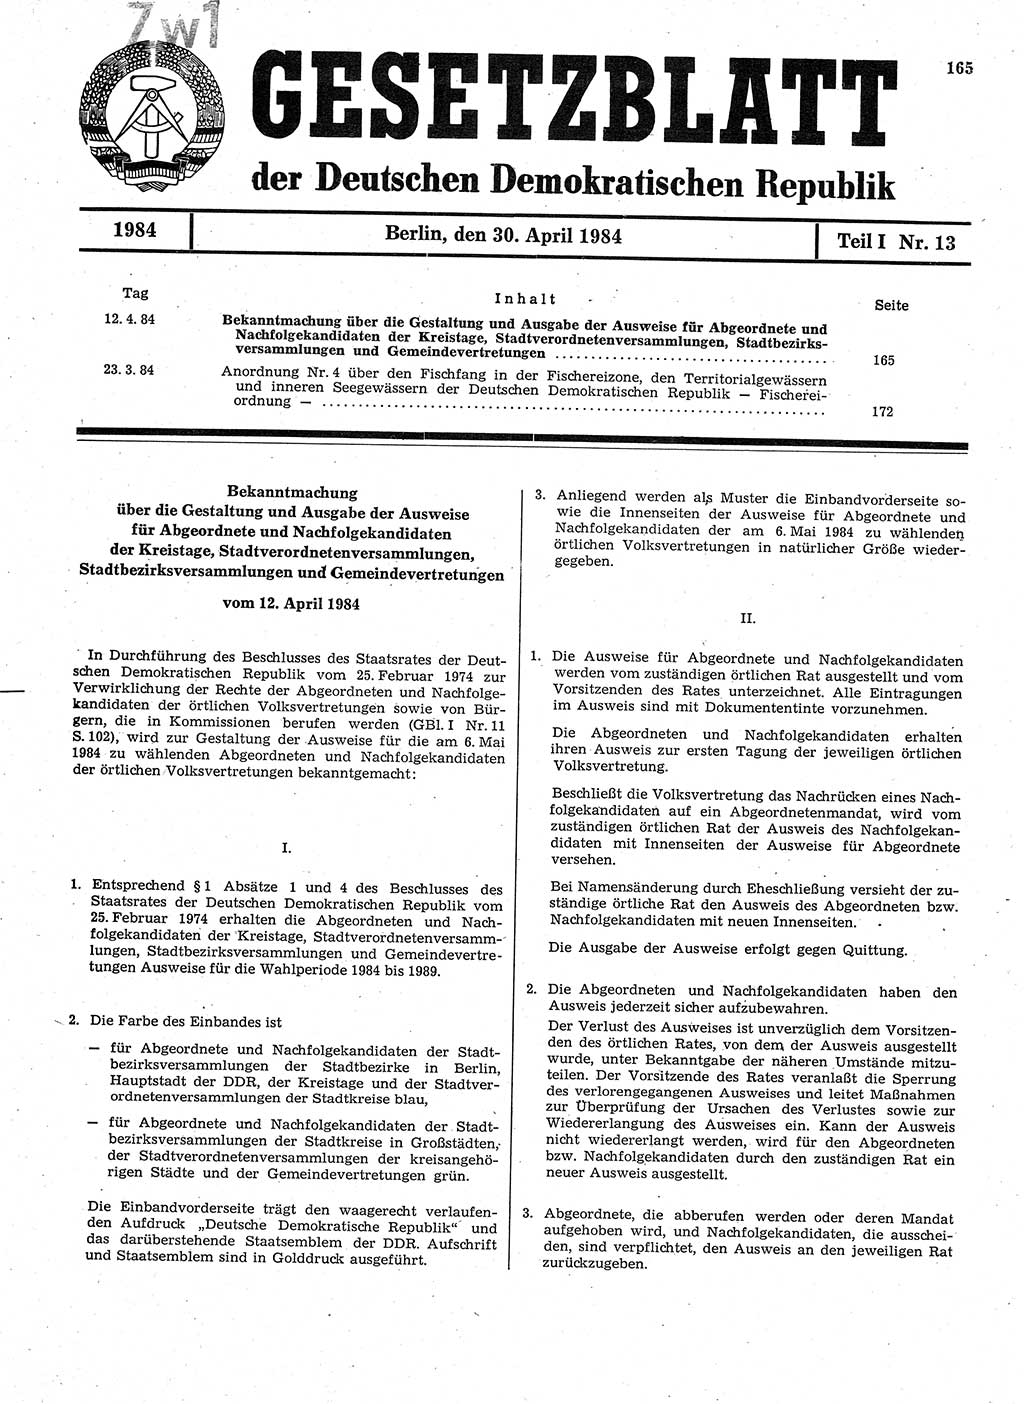 Gesetzblatt (GBl.) der Deutschen Demokratischen Republik (DDR) Teil Ⅰ 1984, Seite 165 (GBl. DDR Ⅰ 1984, S. 165)